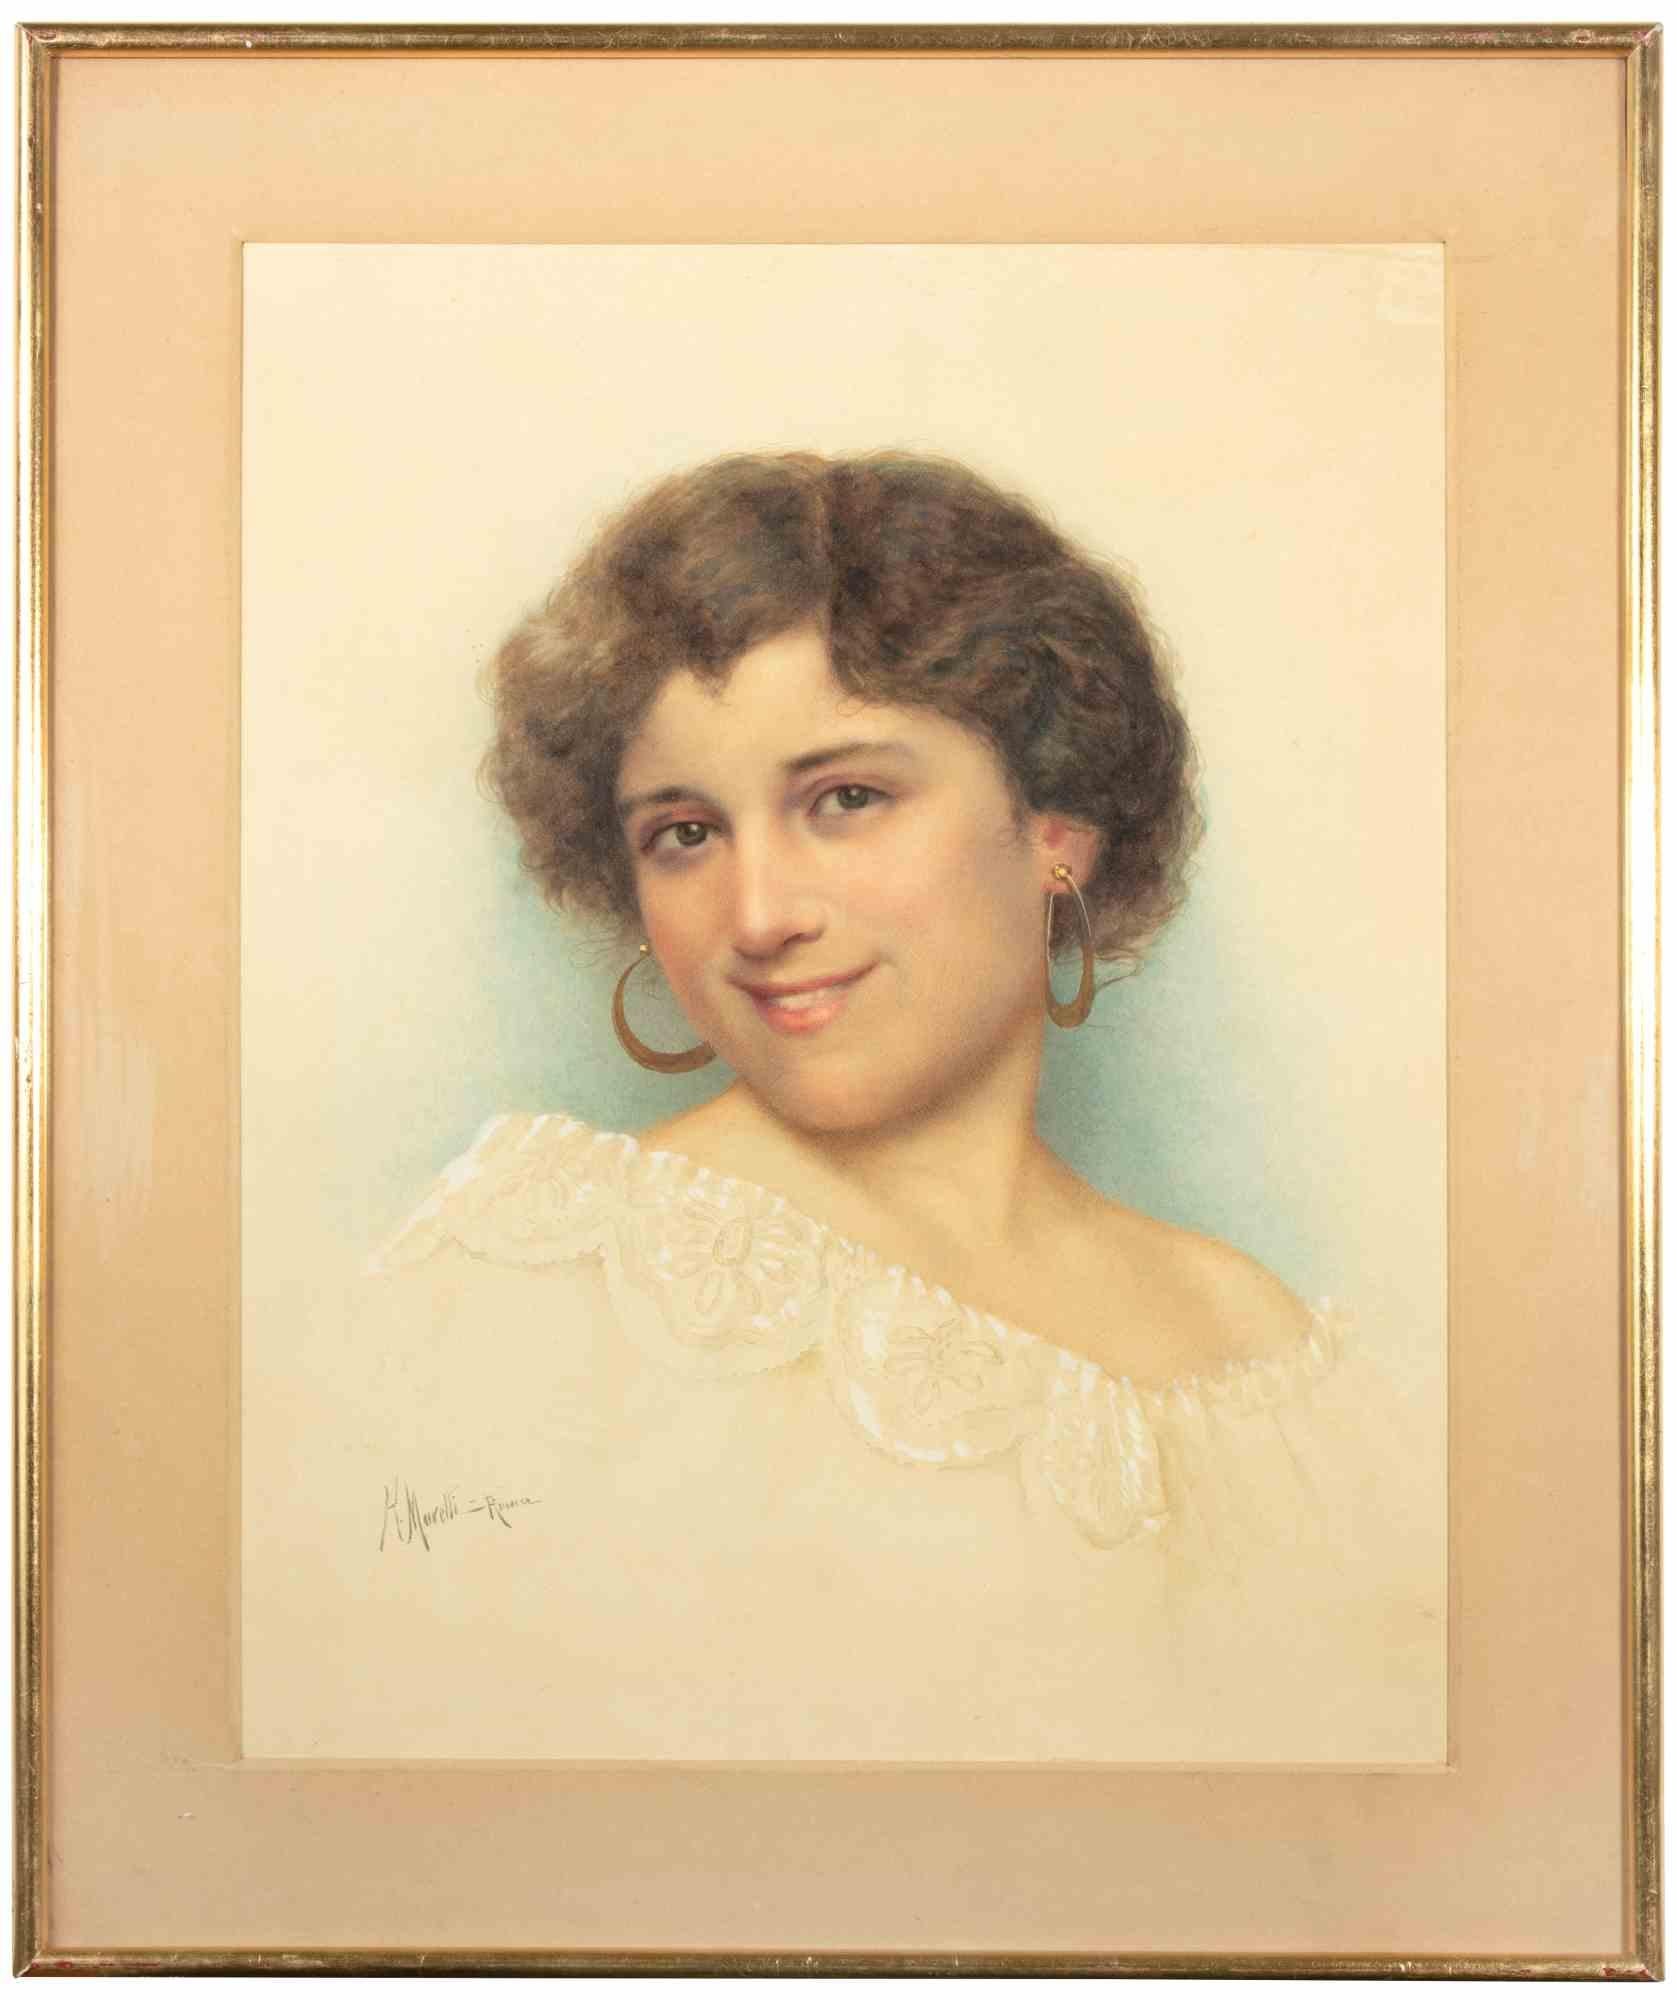 Riccardo Moretti Figurative Art - Portrait of woman - Watercolor by R. Moretti - Early 20th Century